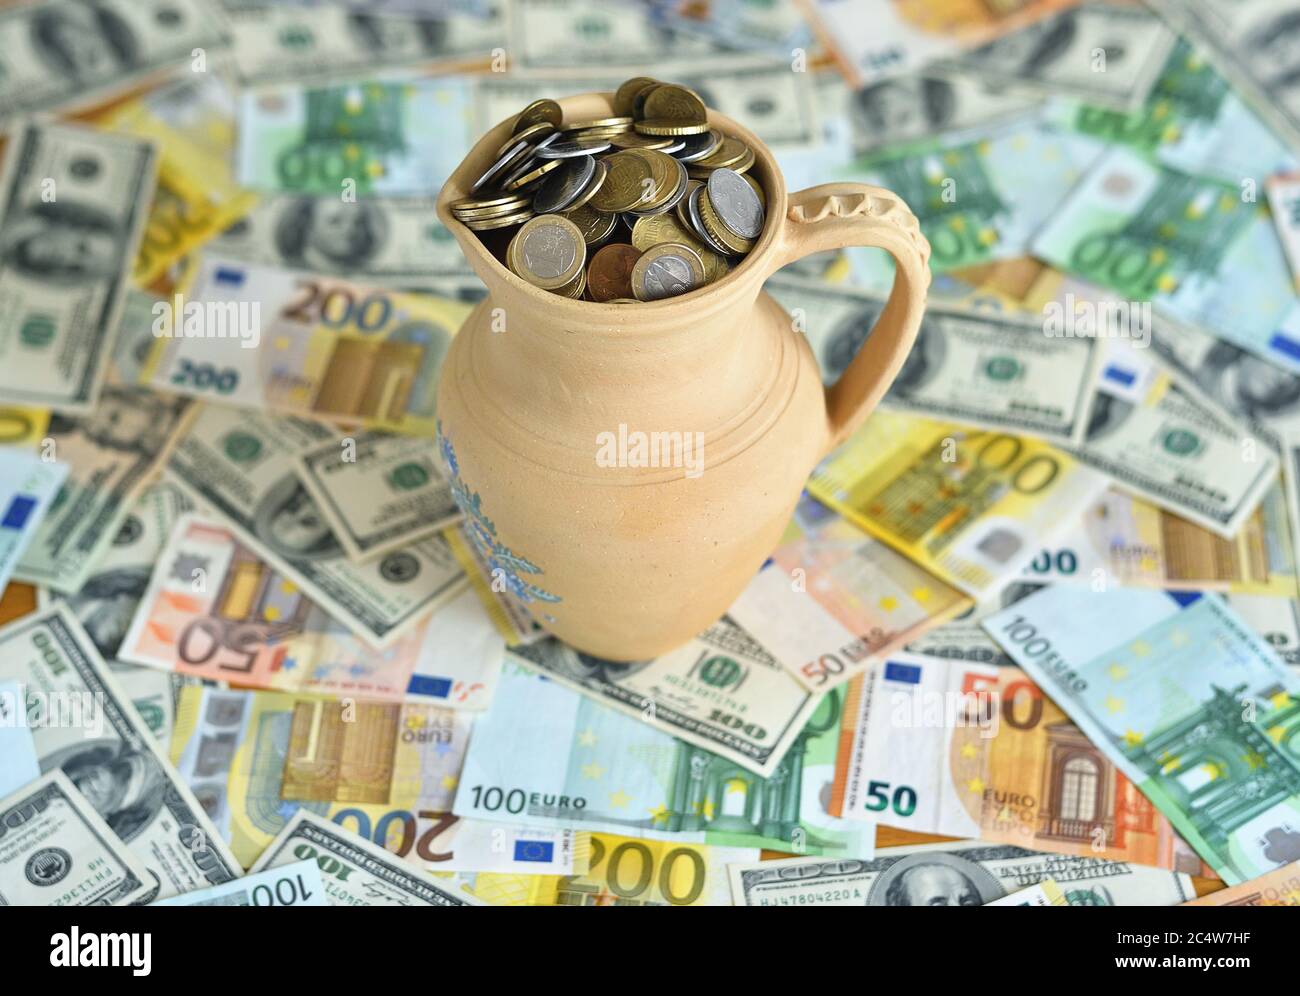 carafe avec pièces de monnaie sur une table avec de l'argent Banque D'Images